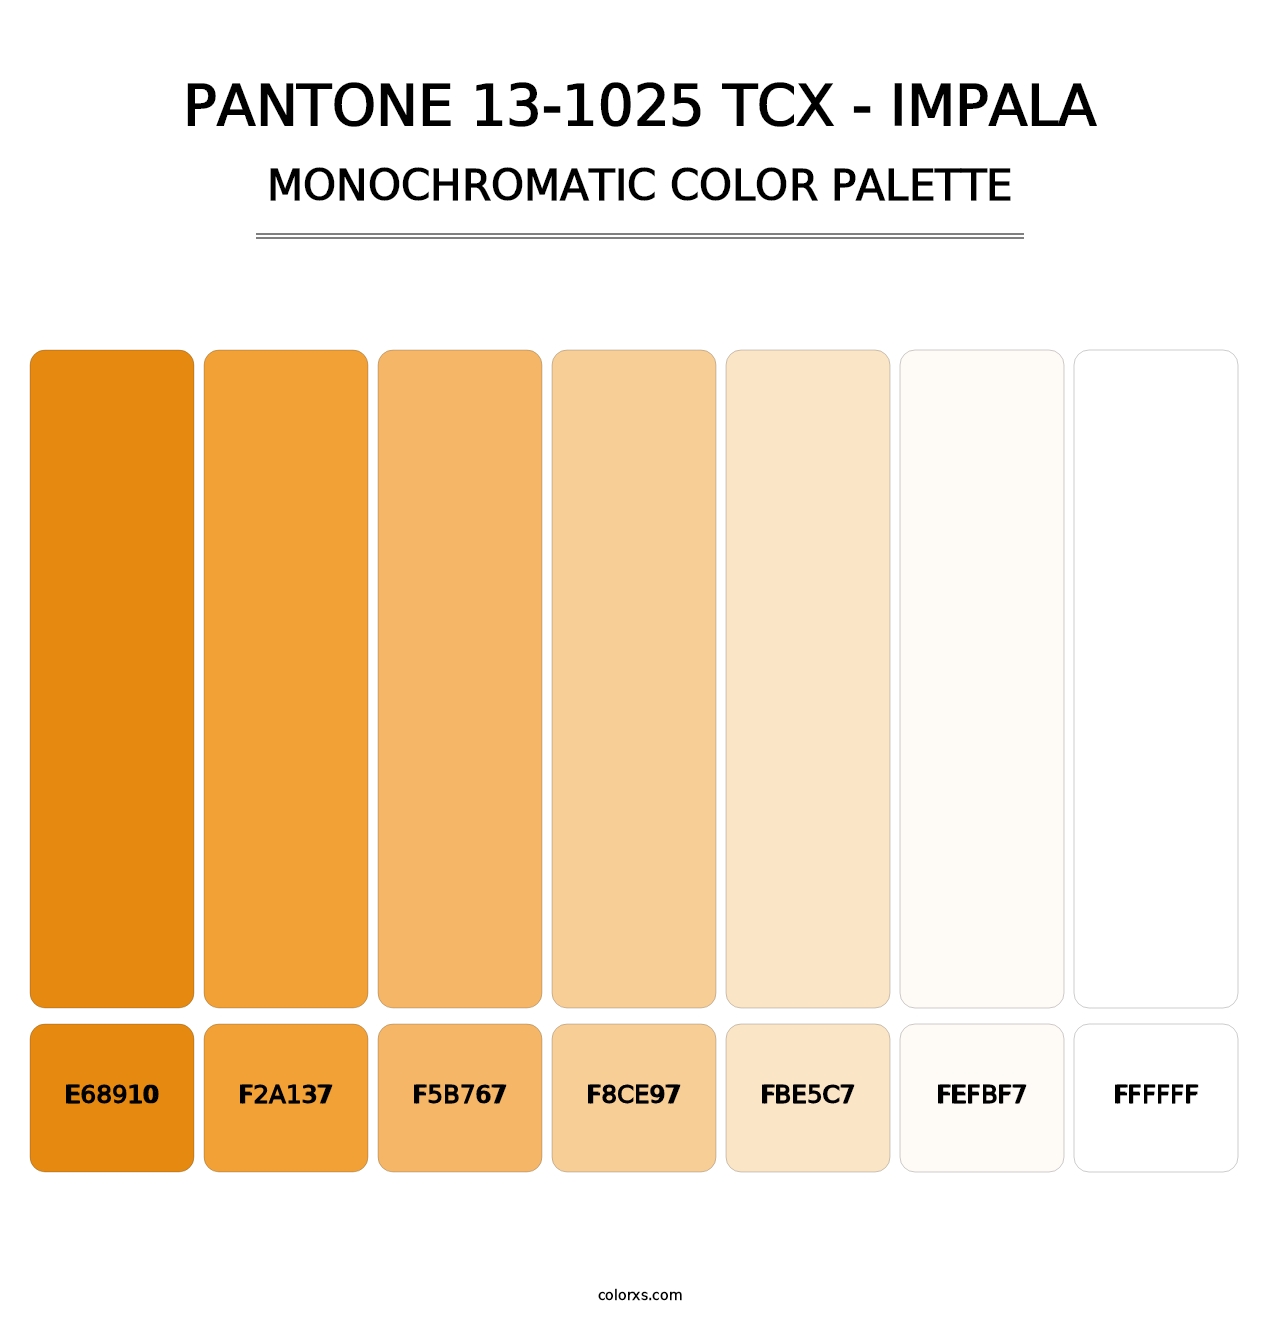 PANTONE 13-1025 TCX - Impala - Monochromatic Color Palette